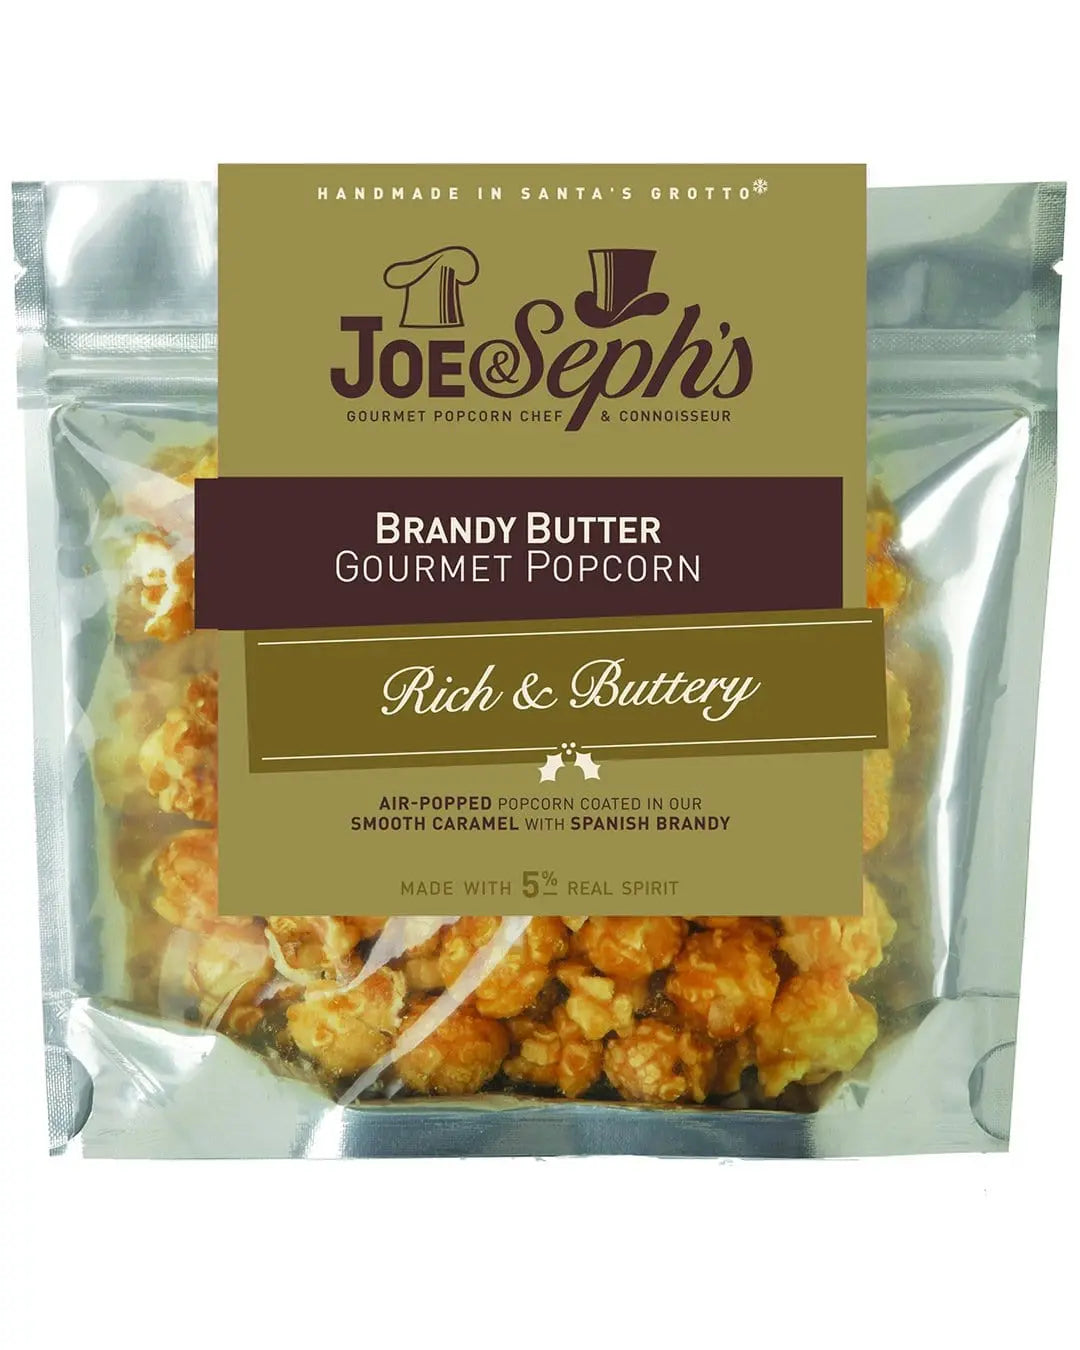 Joe & Seph's Brandy Butter Popcorn Pouch, 32 g Popcorn 0609132435485